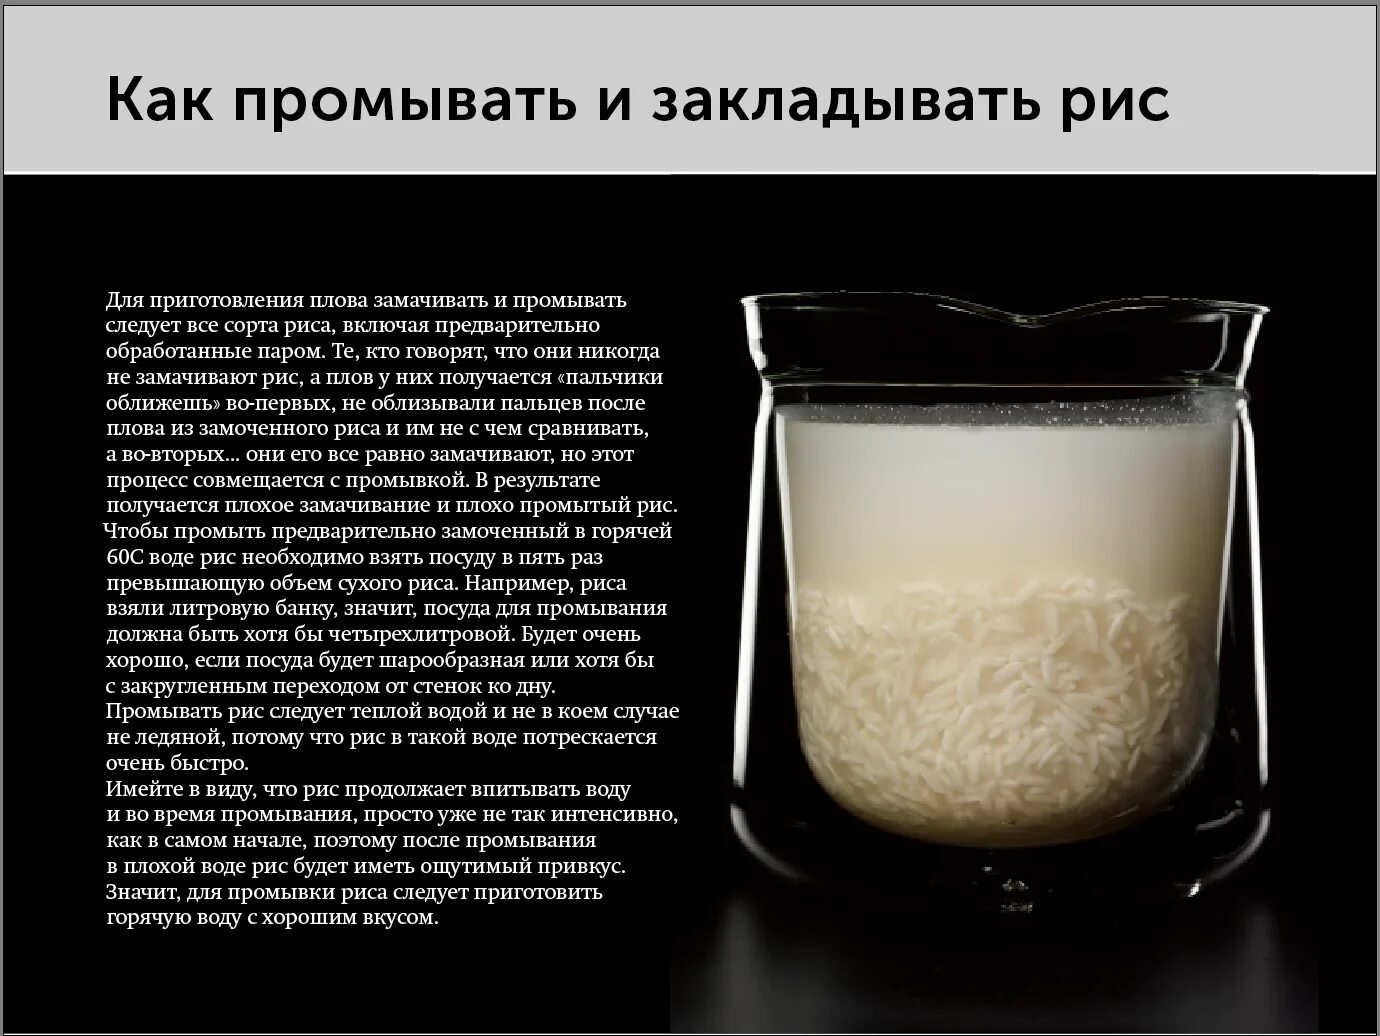 Соотношение риса и воды для плова. Порции риса и воды для плова. Соотношение воды и риса в плове в стаканах. Рис пропорции воды и риса для плова.